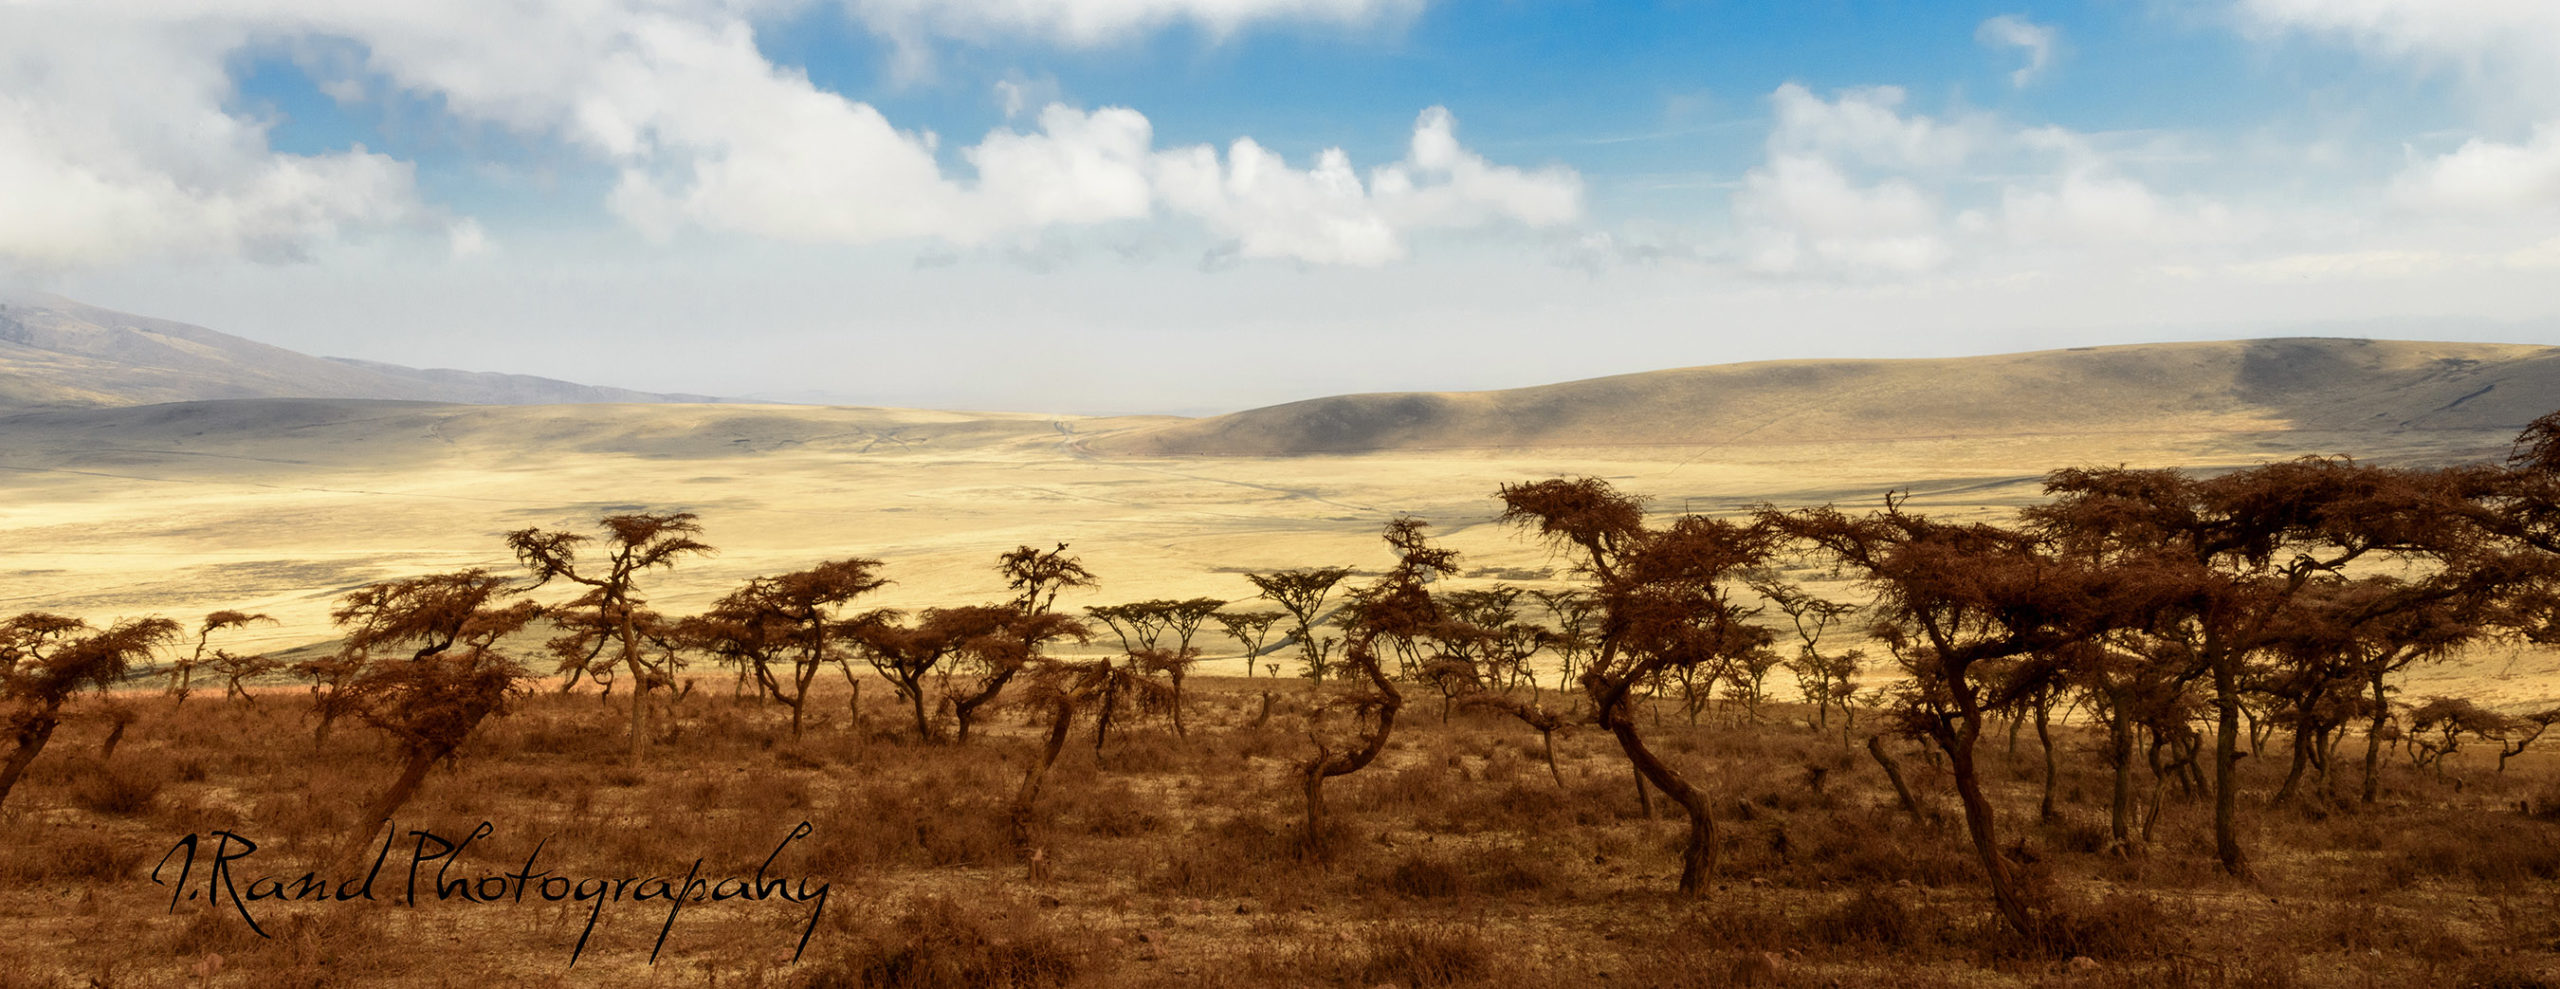 Serengeti, Tanzania Africa